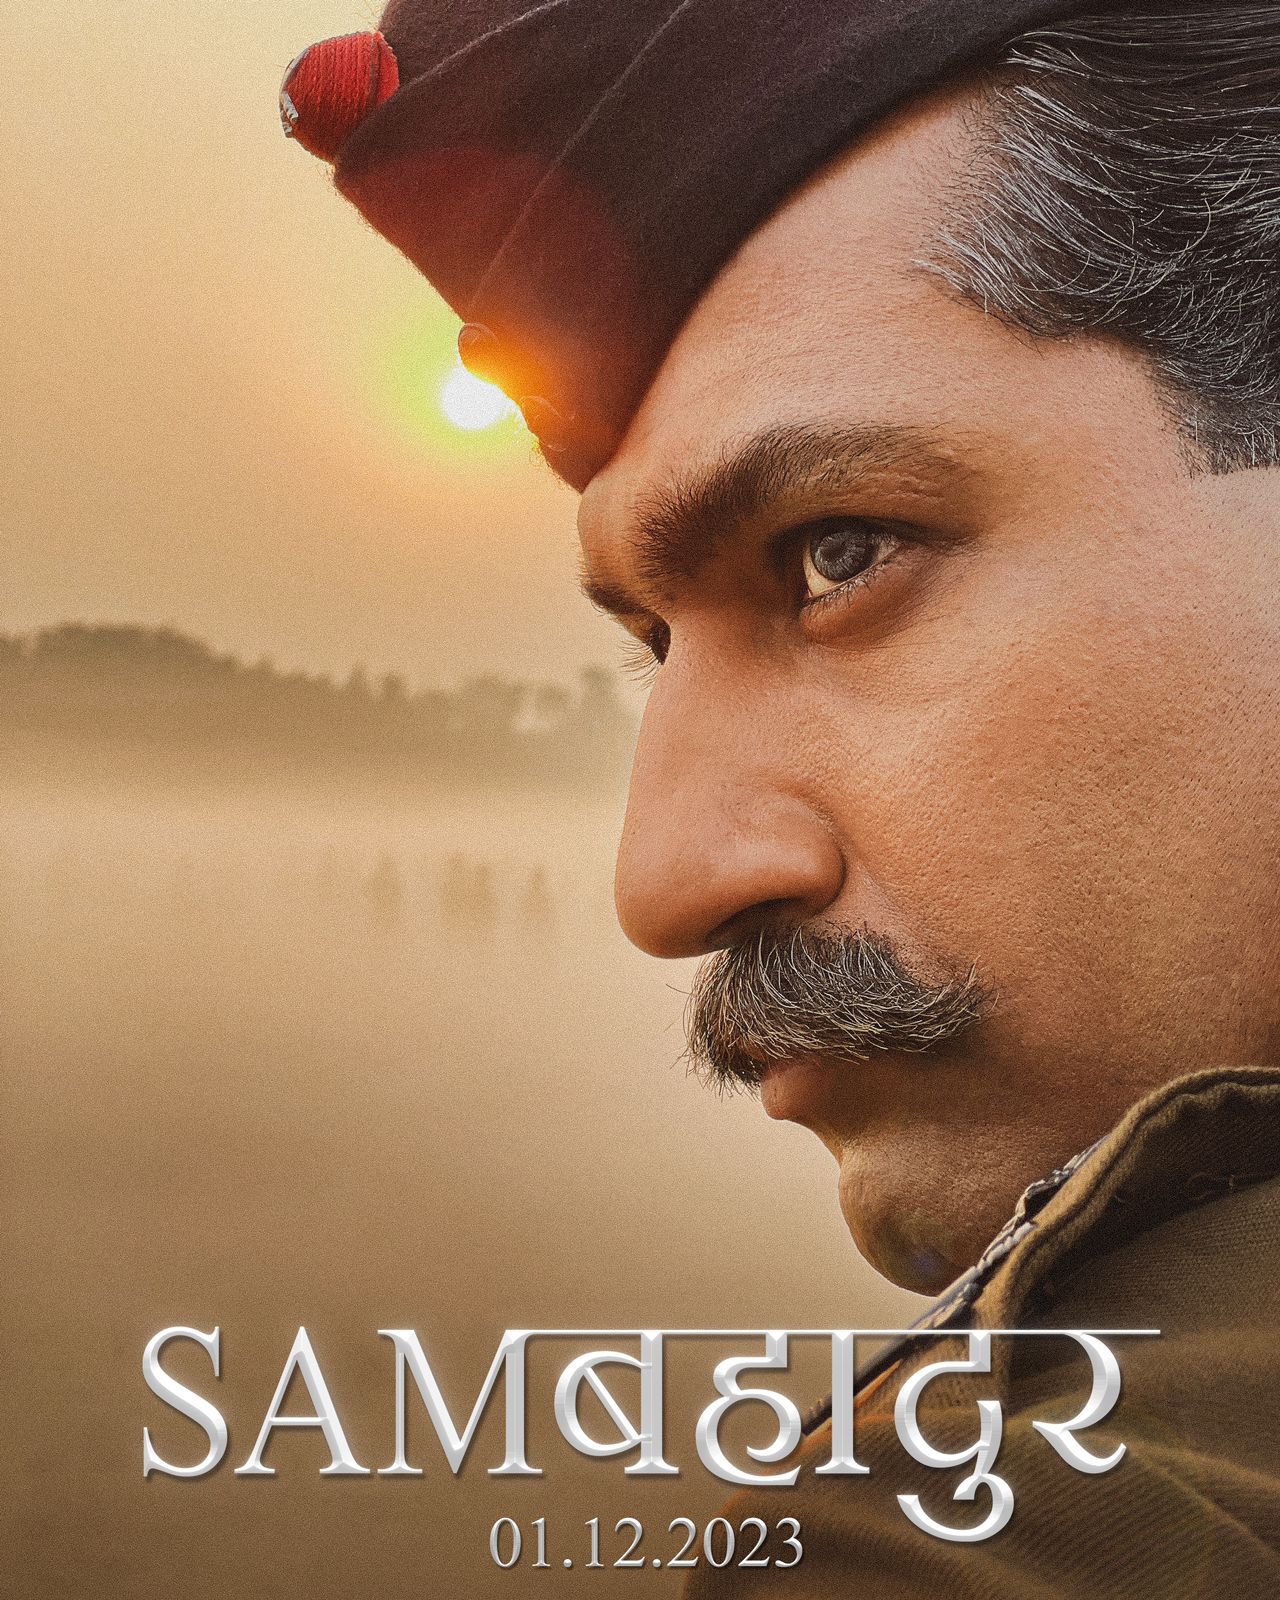 Sam Bahadur (film)